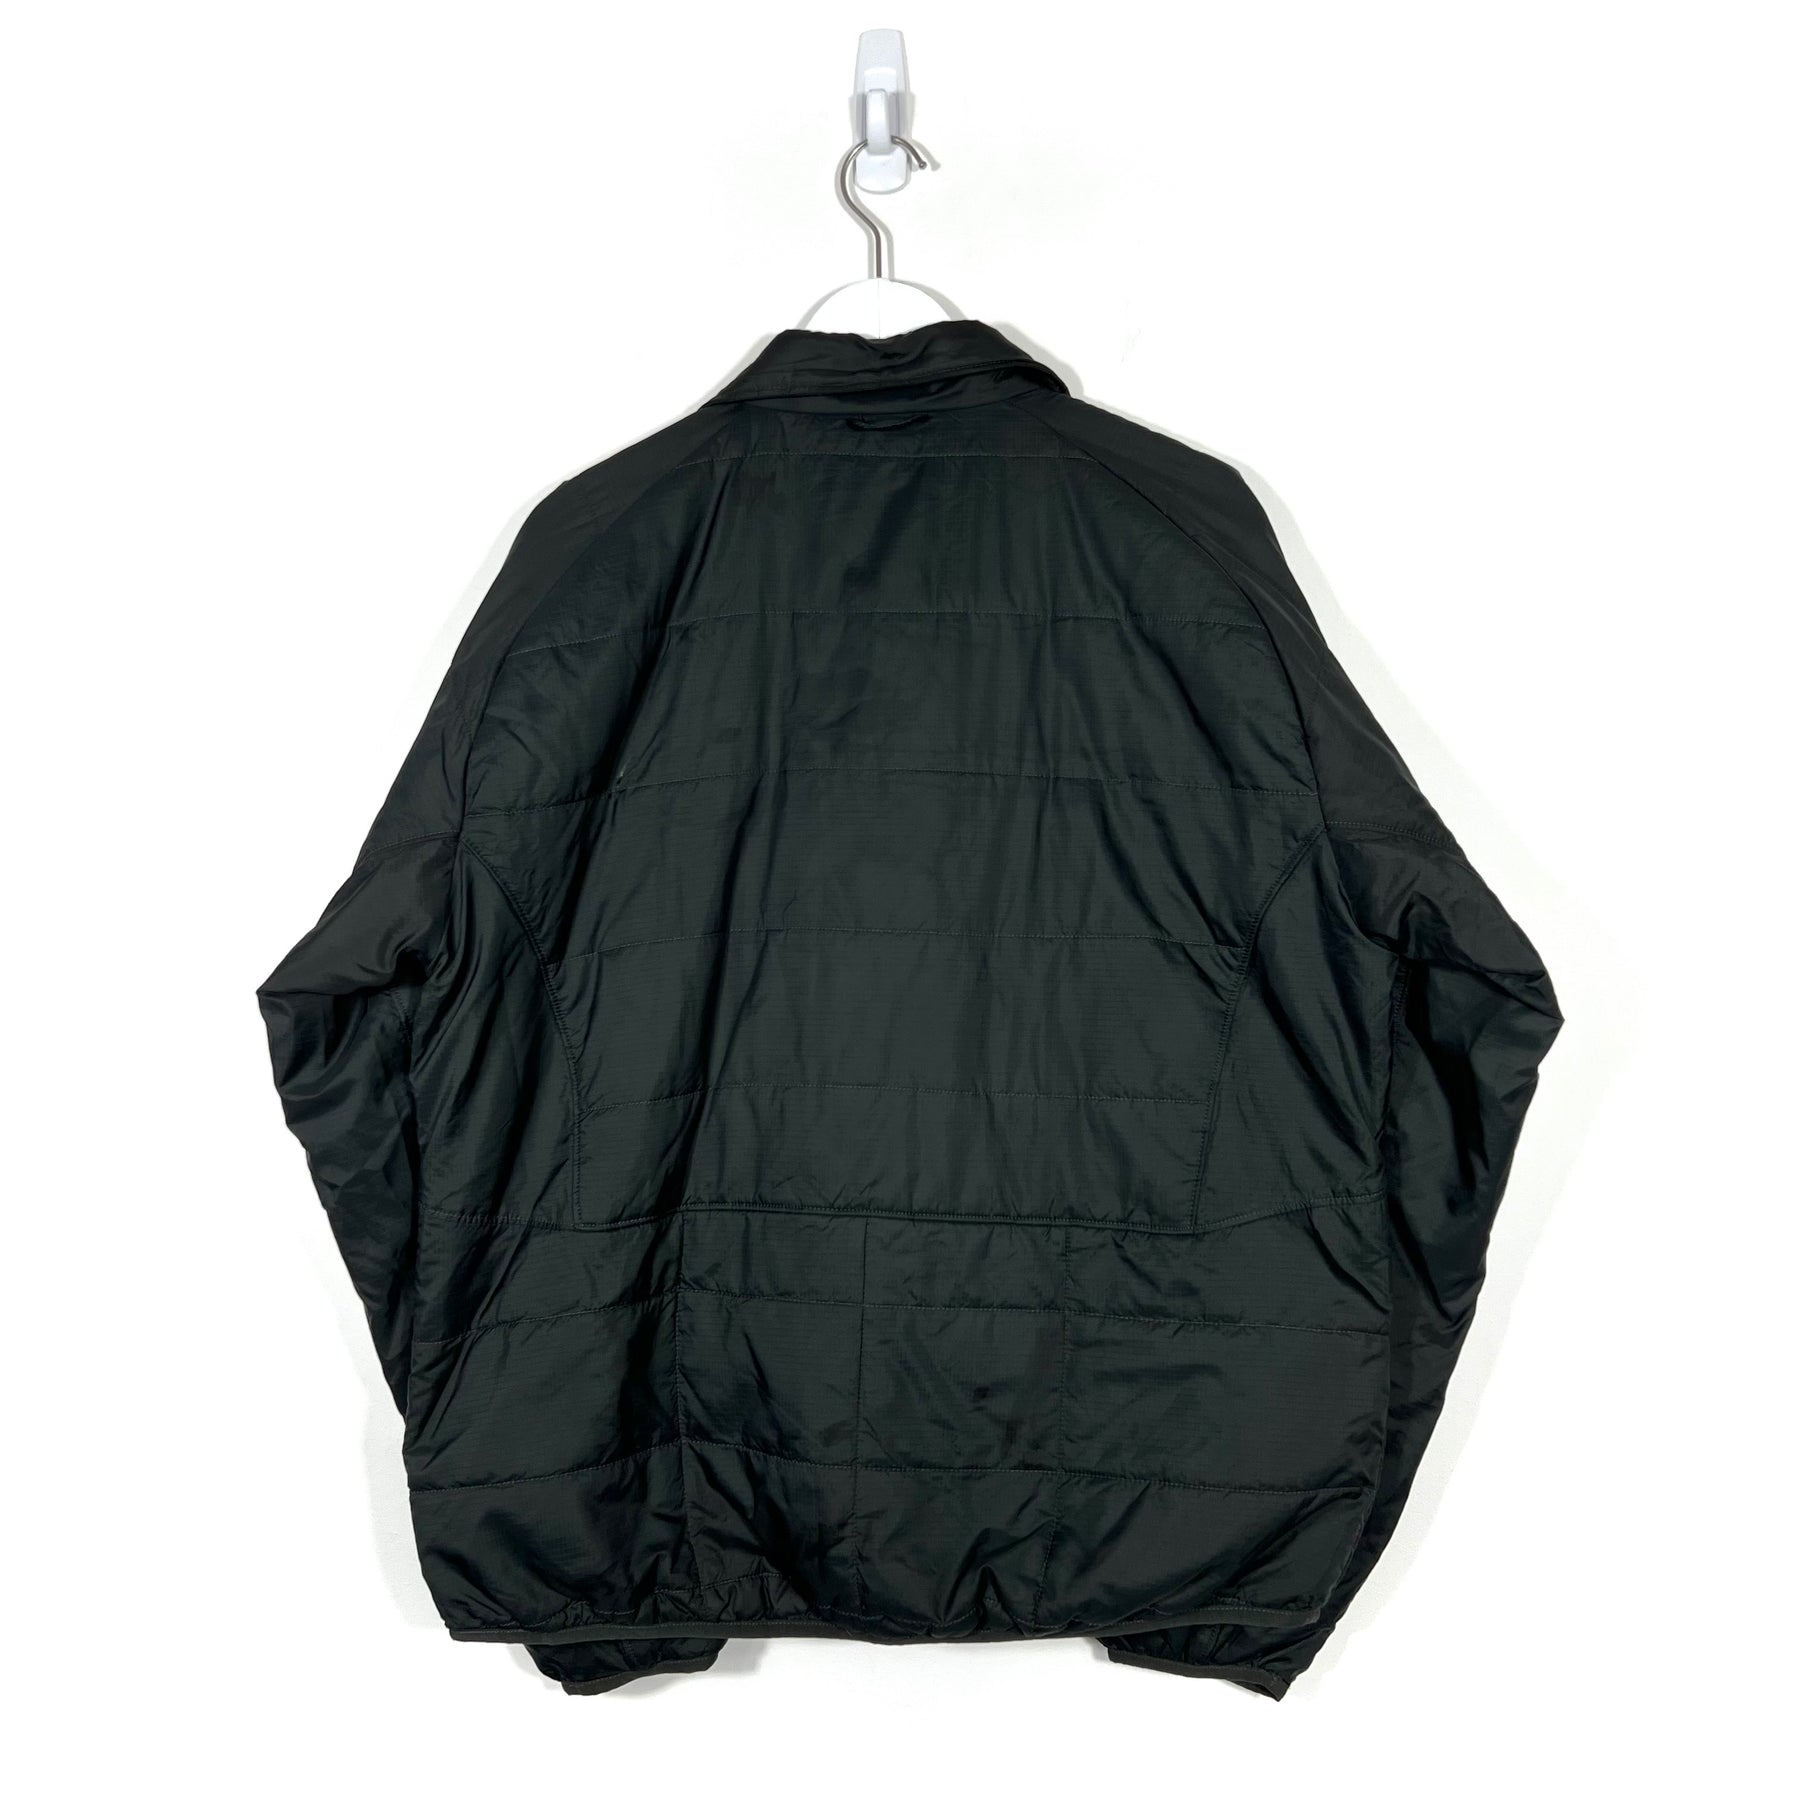 Vintage The North Face Lightweight Jacket - Men's Large